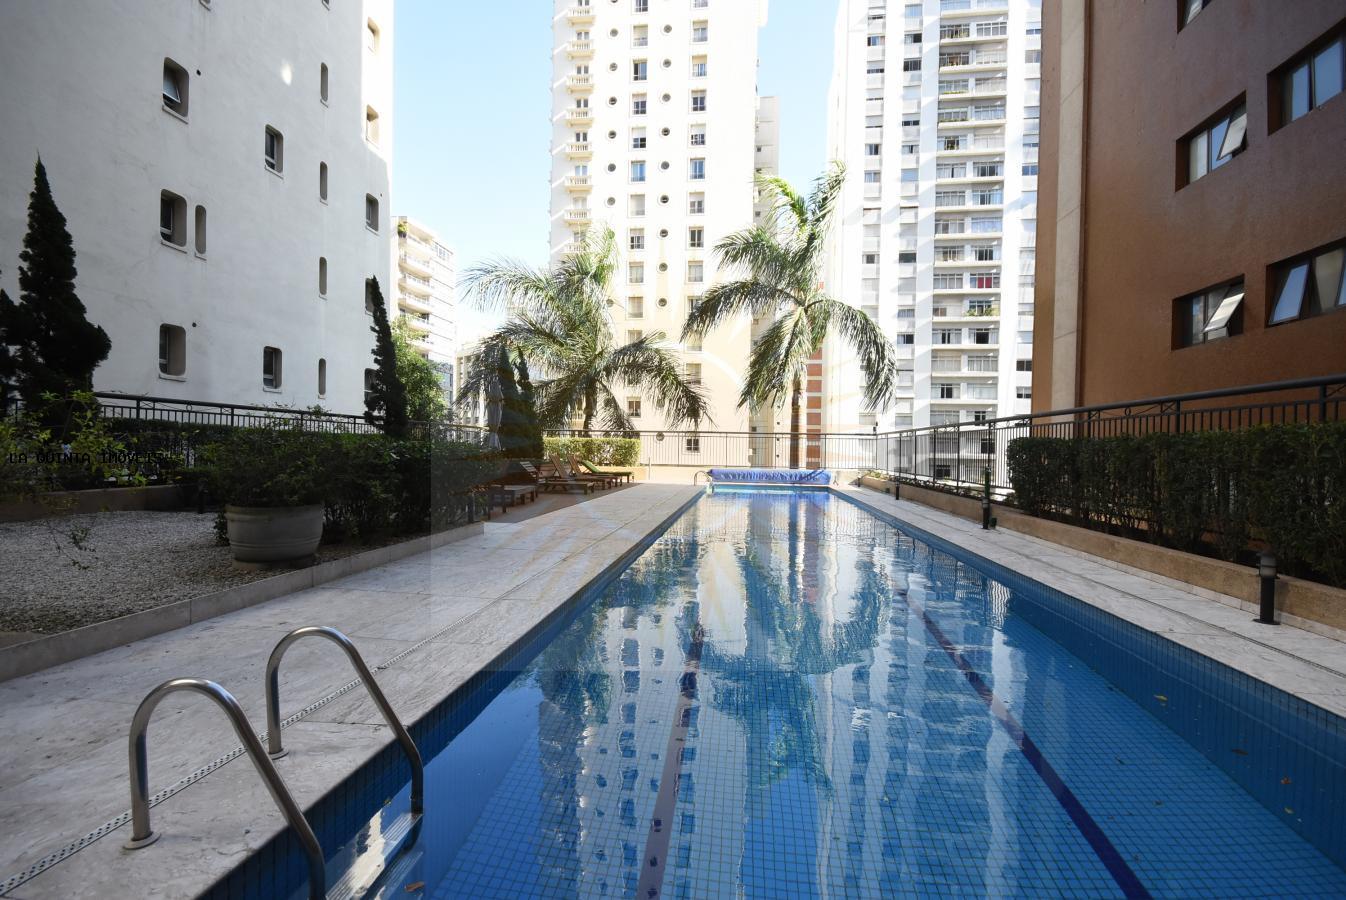 Apartamento para venda em São Paulo / SP, Jardins, 4 dormitórios, 6 banheiros, 4 suítes, 6 garagens, construido em 2005